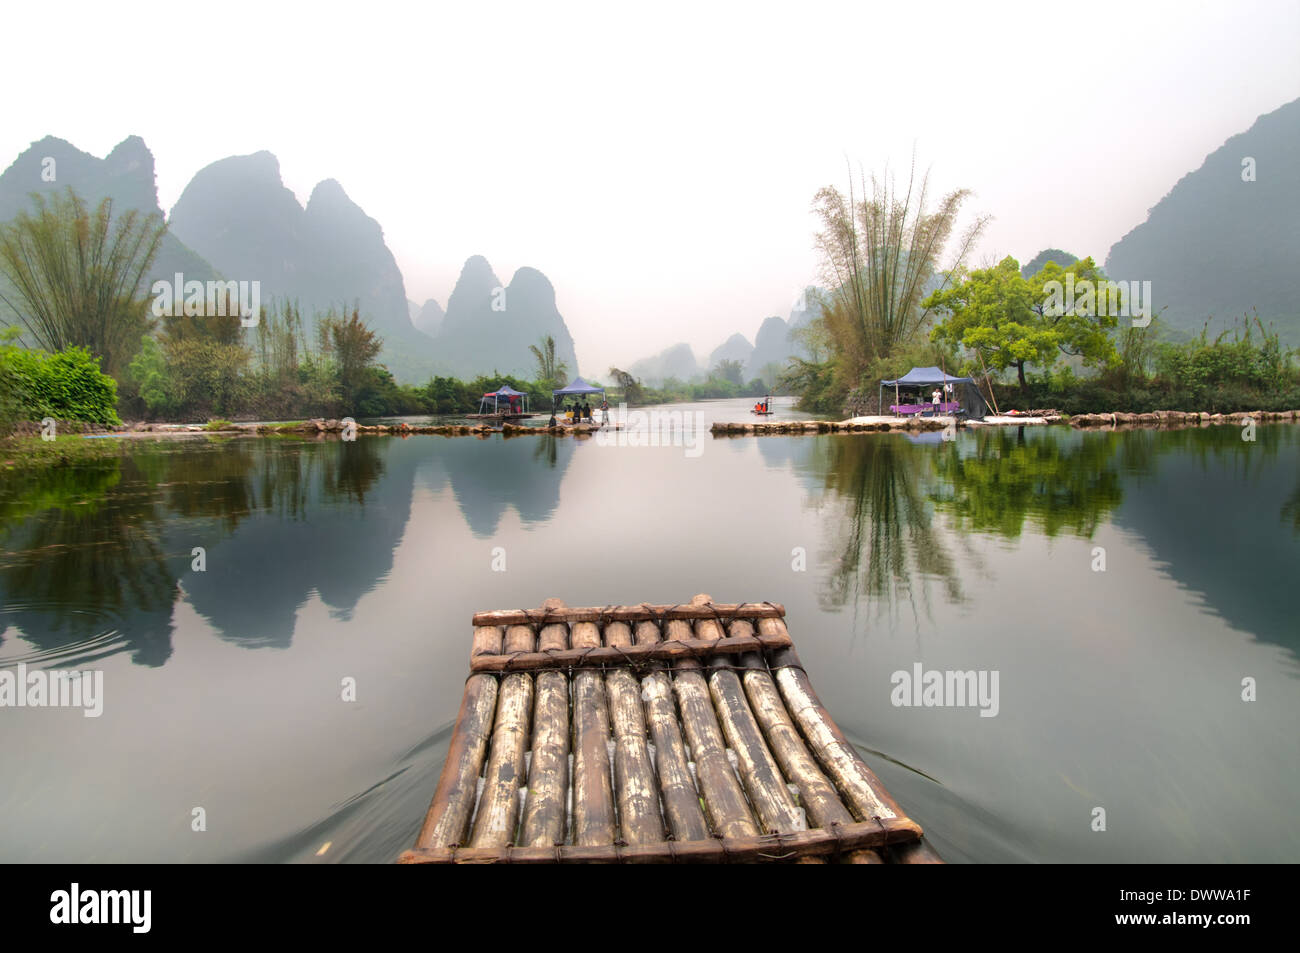 View of the River Li. China, Yangshuo Guilin, Guangxi. Stock Photo